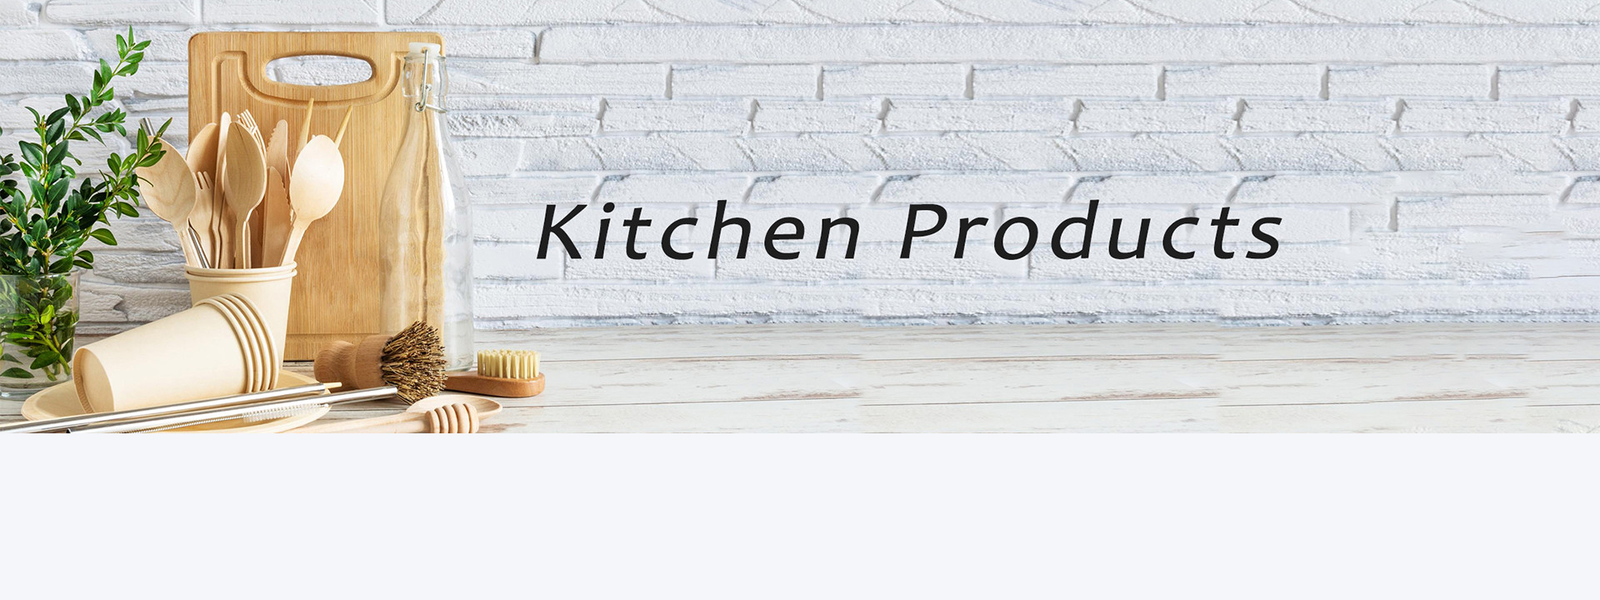 کیفیت محصولات آشپزخانه خانگی کارخانه